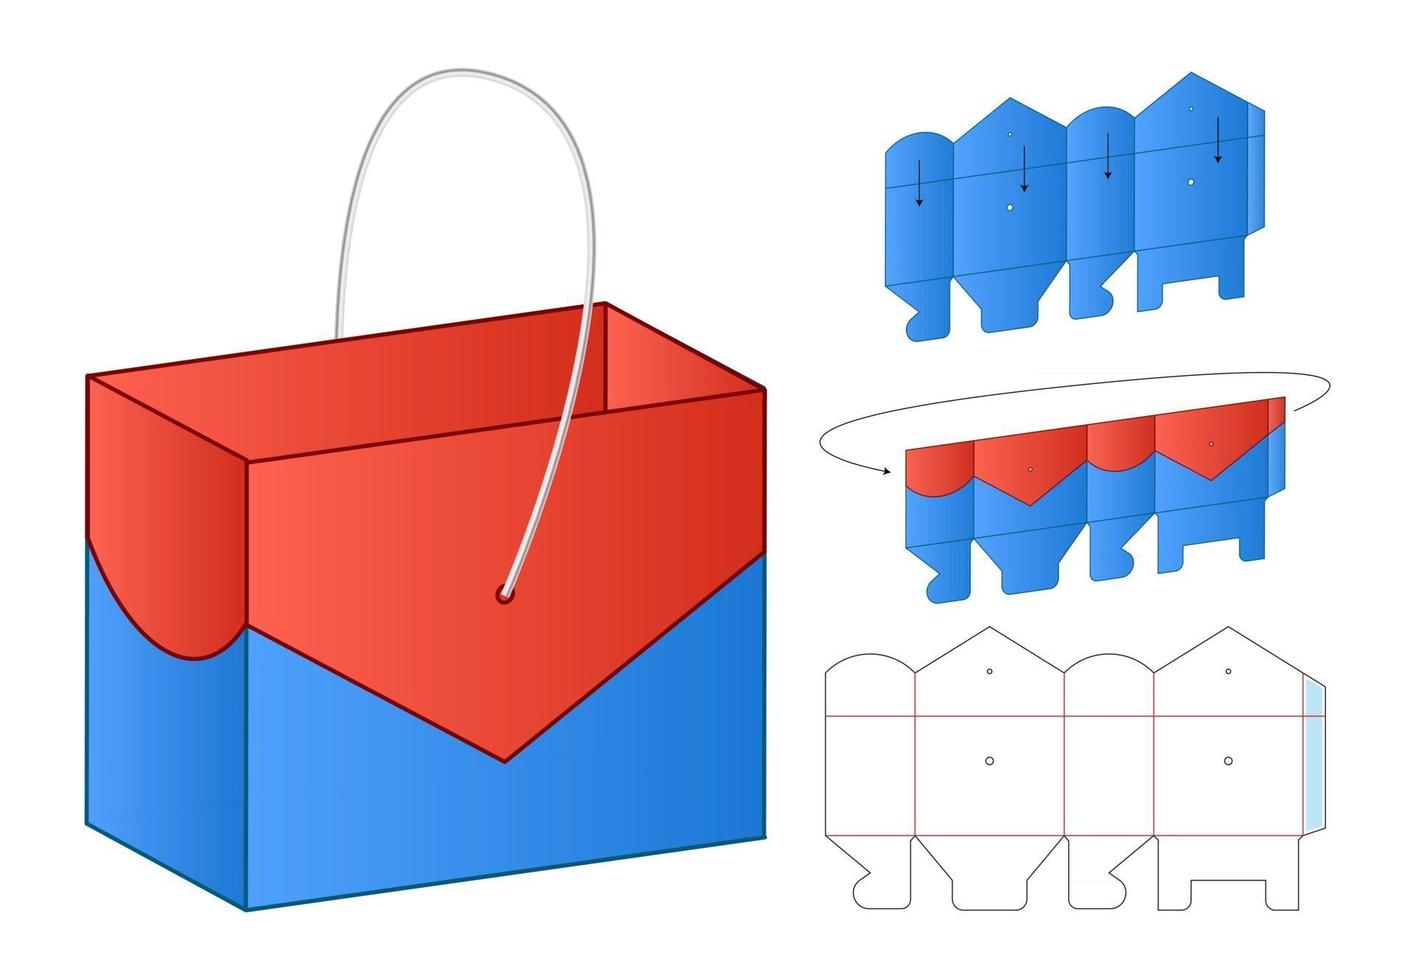 boîte d'emballage die cut template design maquette 3d vecteur